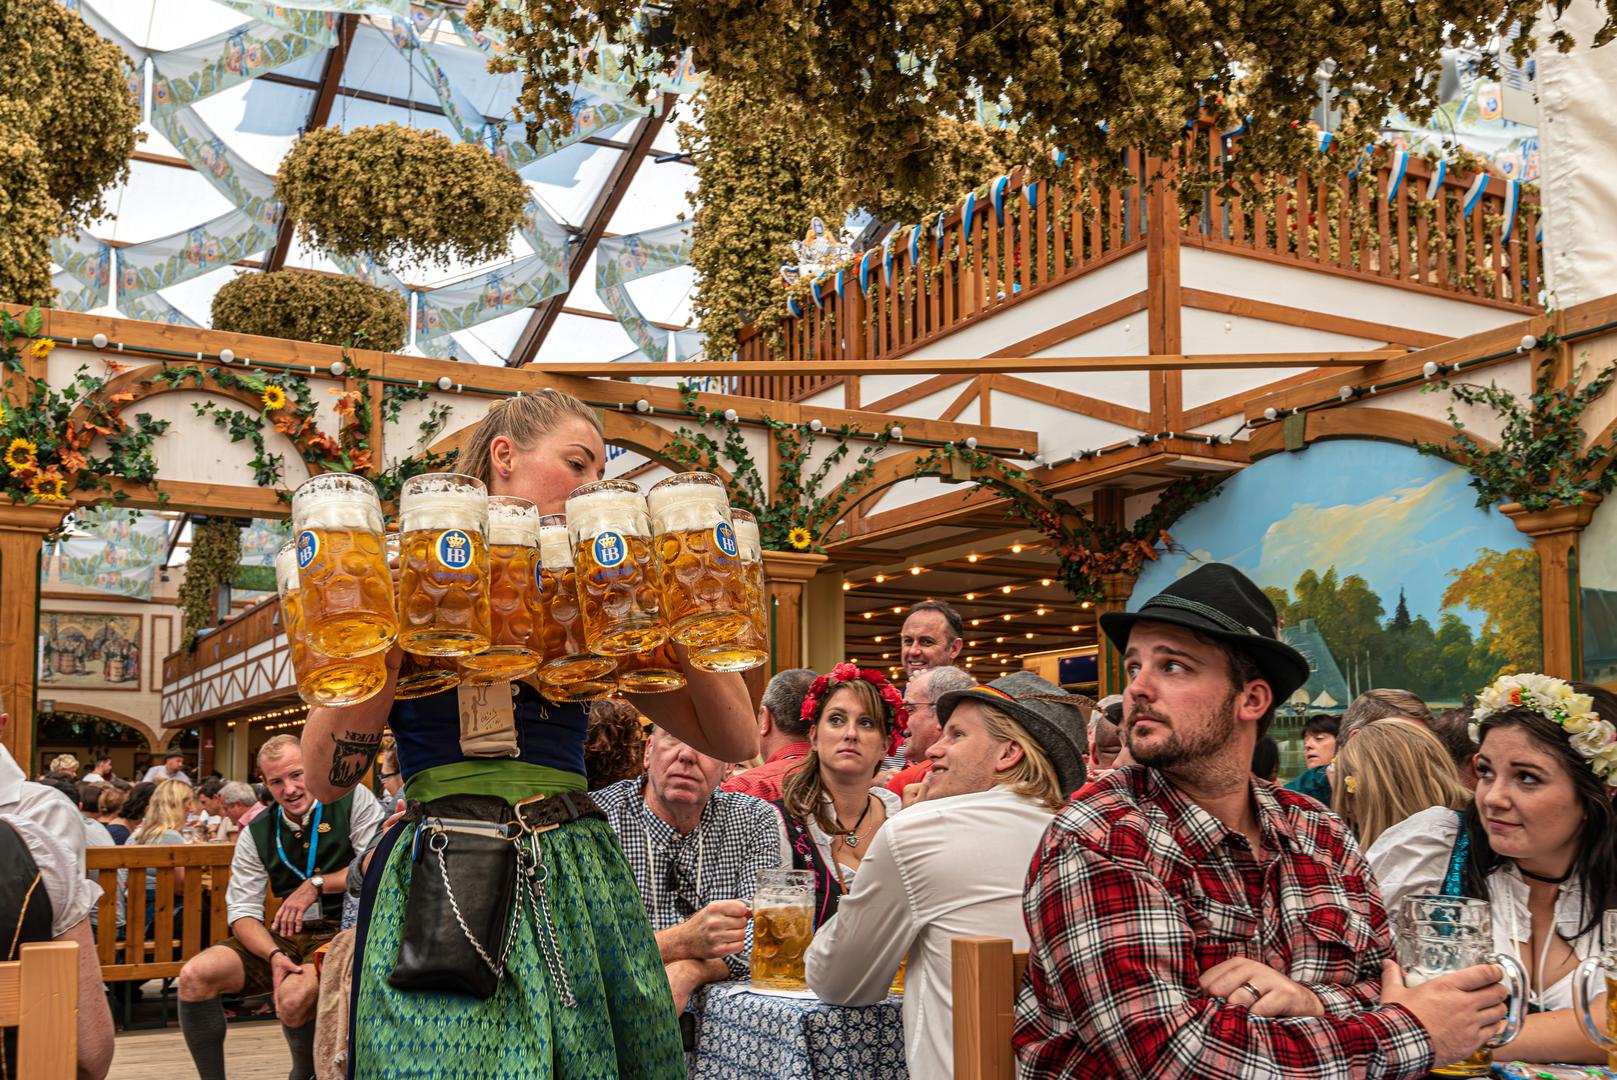 München je dom najvećeg festivala piva na svijetu: Pivo je velika stvar u cijeloj Njemačkoj, ali nigdje više nego u Münchenu. Münchenski Oktoberfest, koji se održava krajem rujna i završava u listopadu, najveći je svjetski festival piva. Izvorno je slavio vjenčanje kralja Ludwiga II. Gradom je raspoređeno više od 60 pivnica i šest velikih pivovara. Kad smo već kod piva, jeste li znali da se u Bavarskoj pivo zakonski smatra hranom? 500 godina star Zakon o čistoći piva, koji je 23. travnja 1516. proglasio vojvoda Wilhem, štiti gradske pivopije od kontaminanata, kemikalija i aditiva. Na snazi ​​je i danas i diktira kako se pivo službeno proizvodi u Bavarskoj.